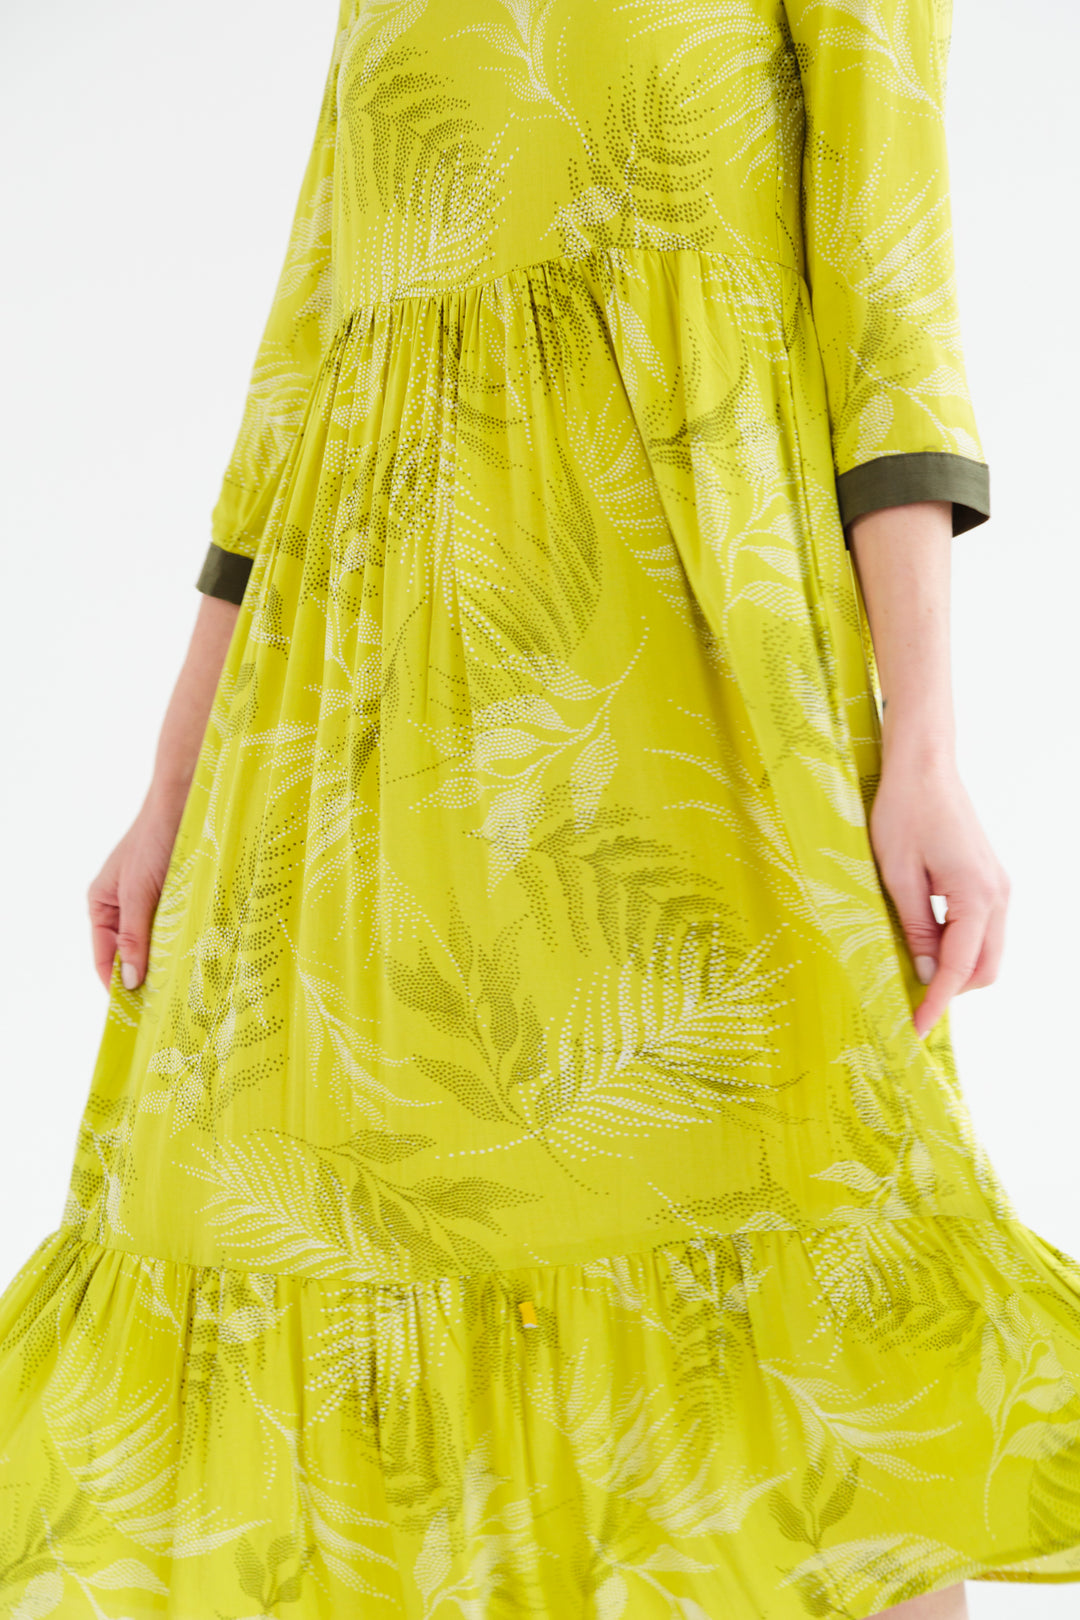 Tanner Dress Lime Polka Dot-DRESSES-kindacollection-Kinda